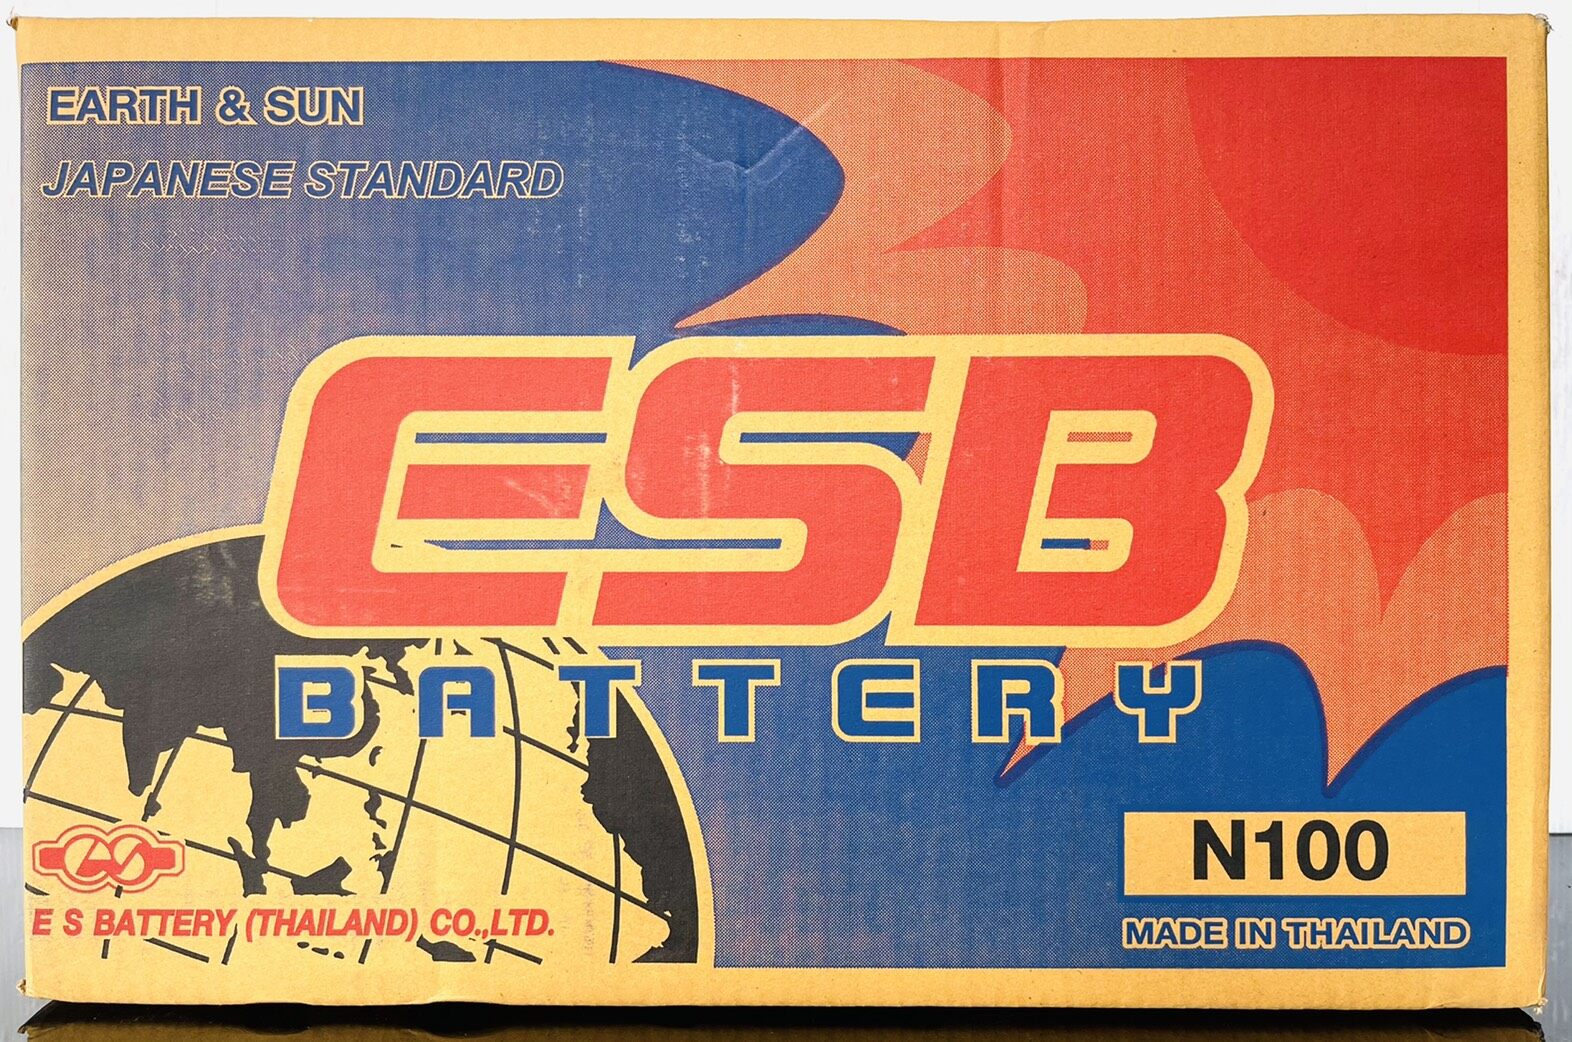 แบตเตอรี่ ESB ขนาด N100 ไฟ12V100แอมป์ แผ่นเต็ม (ยังไม่ได้เติมน้ำกรด) ลูกค้าต้องเติมน้ำกรดและชาร์จไฟก่อนใช้งาน รับประกันโดย Siam Battery